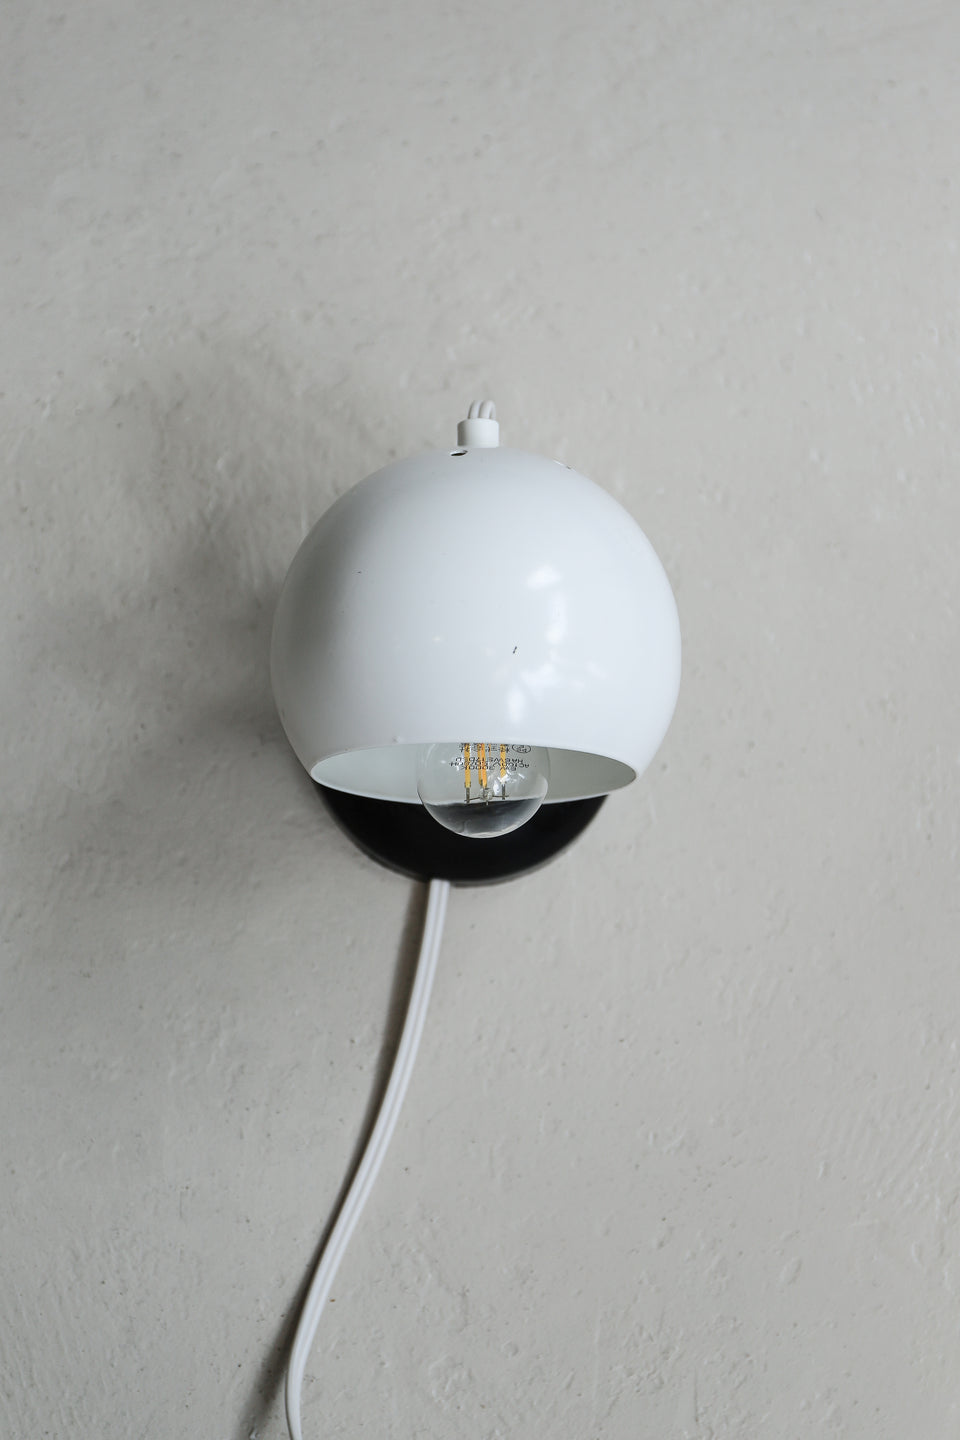 Danish Vintage Magnet Ball Wall Lamp/デンマークヴィンテージ ボールウォールランプ 壁掛け テーブルランプ 北欧インテリア